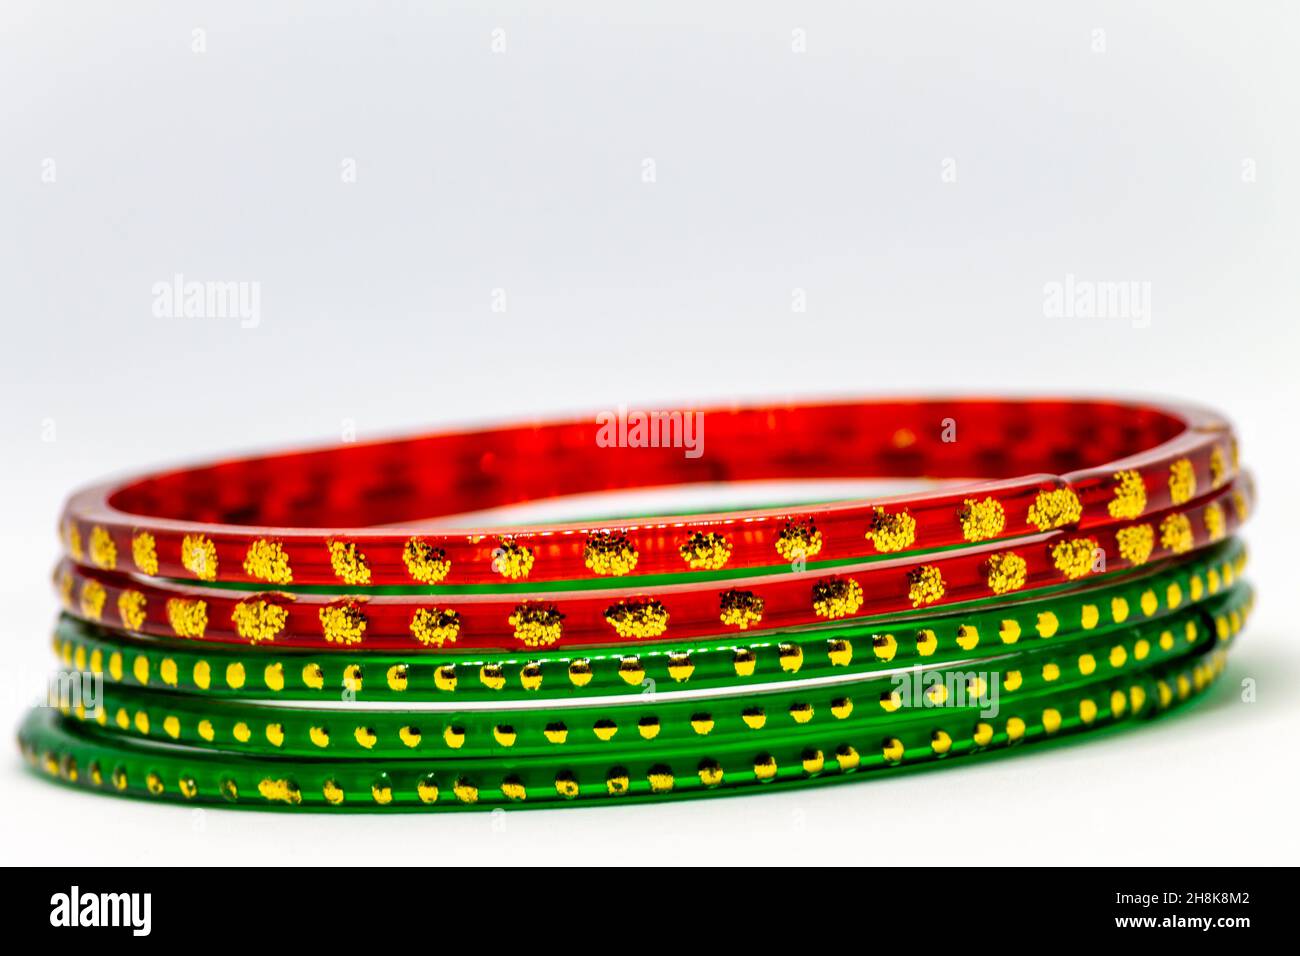 Gros plan de bracelets en verre rouge et vert (bracelets) avec des points dorés sur fond blanc Banque D'Images